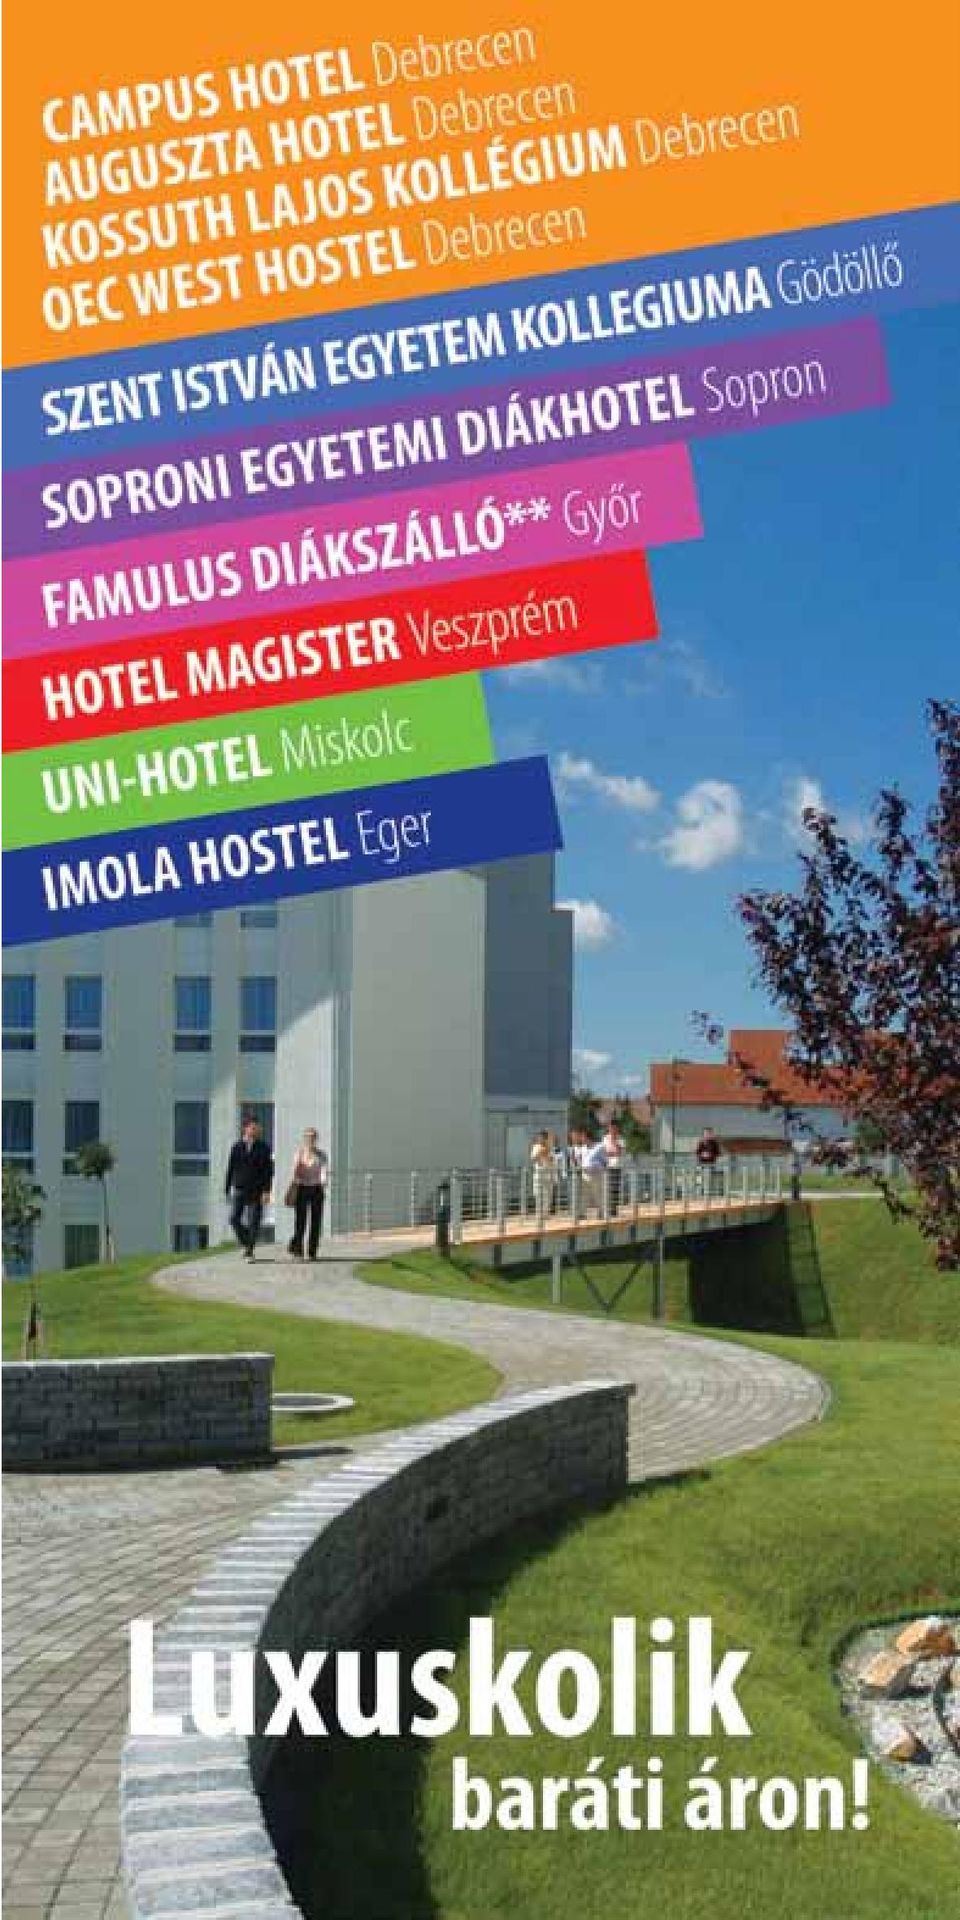 Campus Hotel Debrecen - PDF Free Download